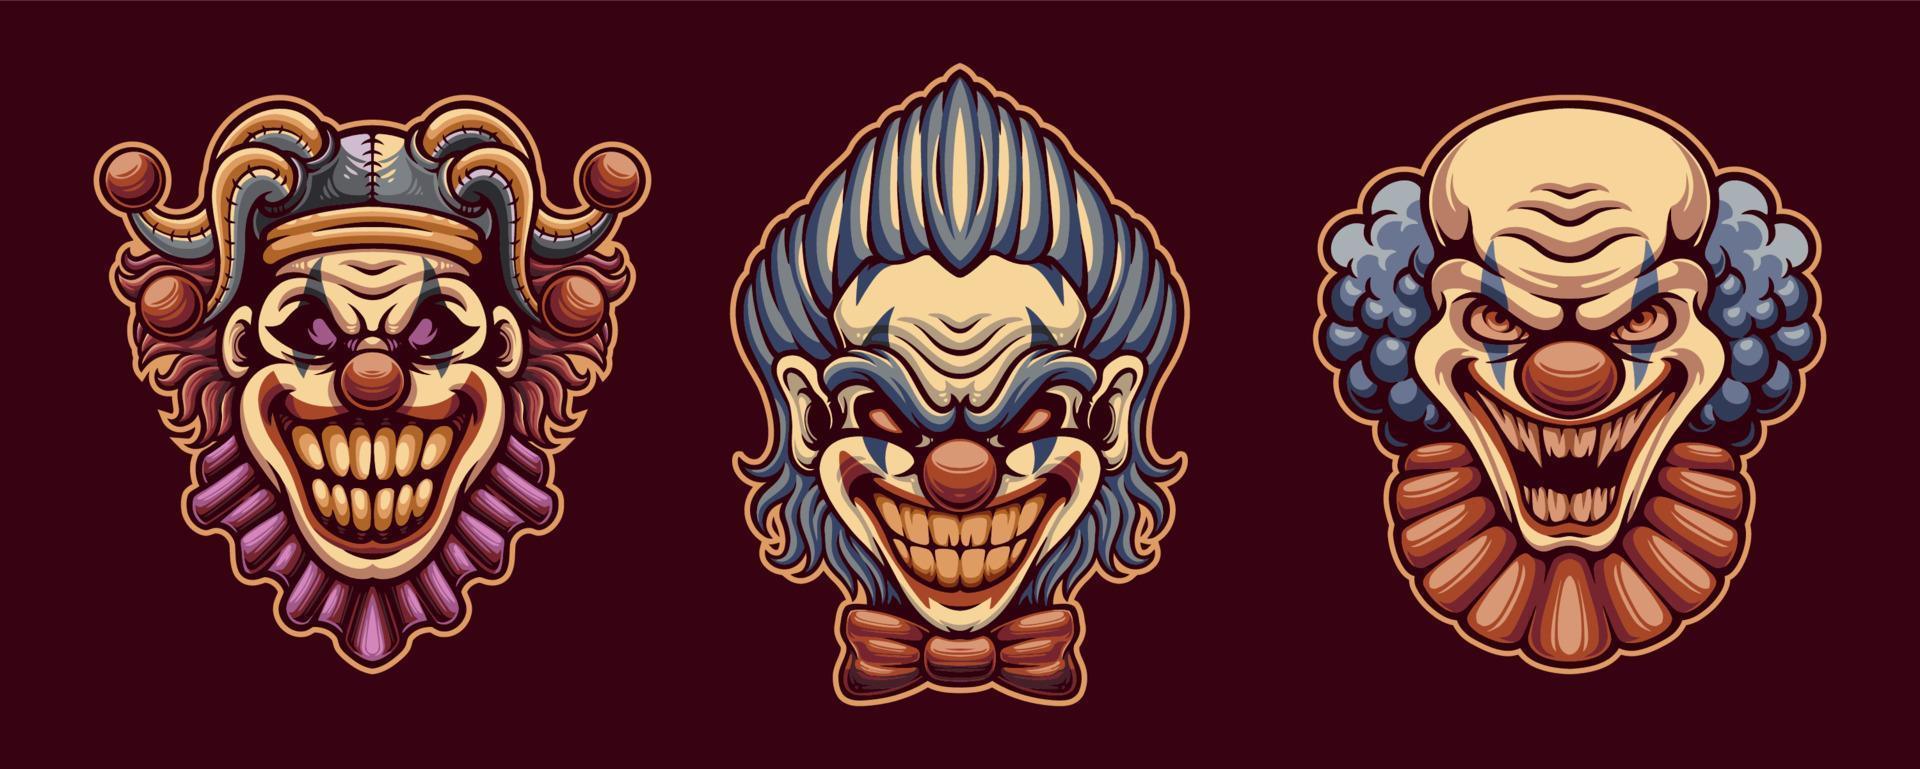 boos clown grappenmaker gezicht illustraties voor mascotte, t-shirt, sticker, en etiket vector